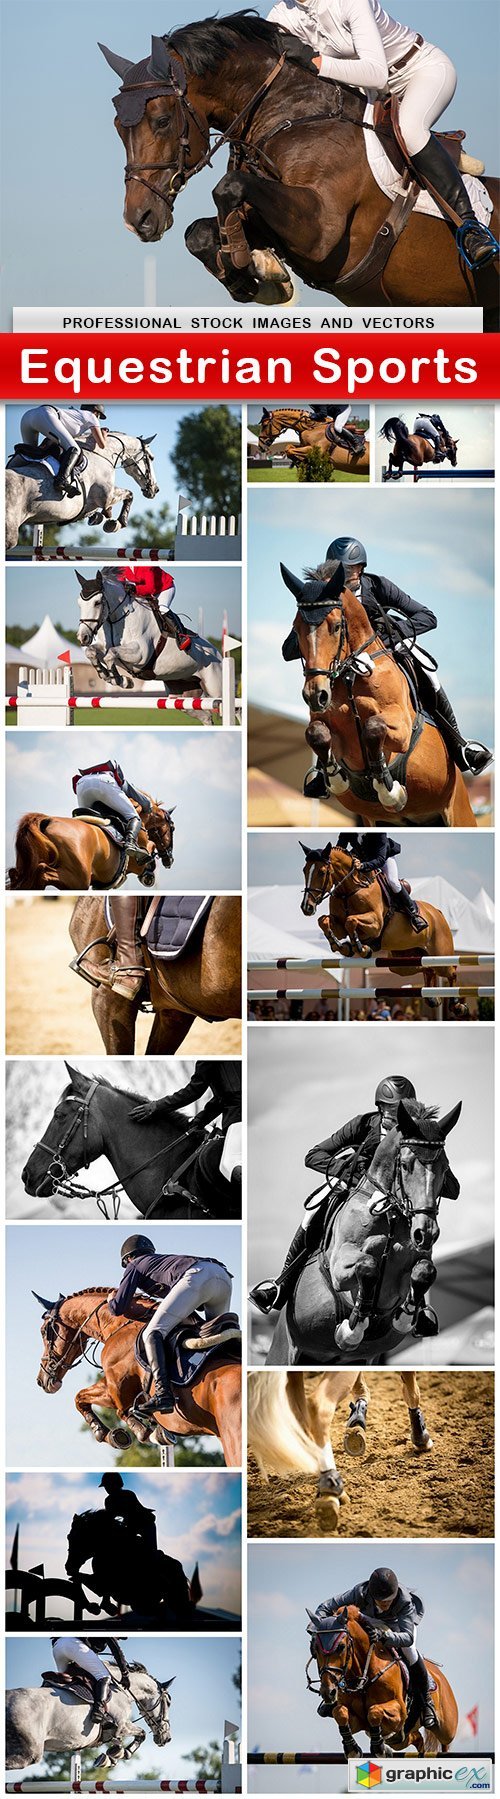 Equestrian Sports - 16 UHQ JPEG